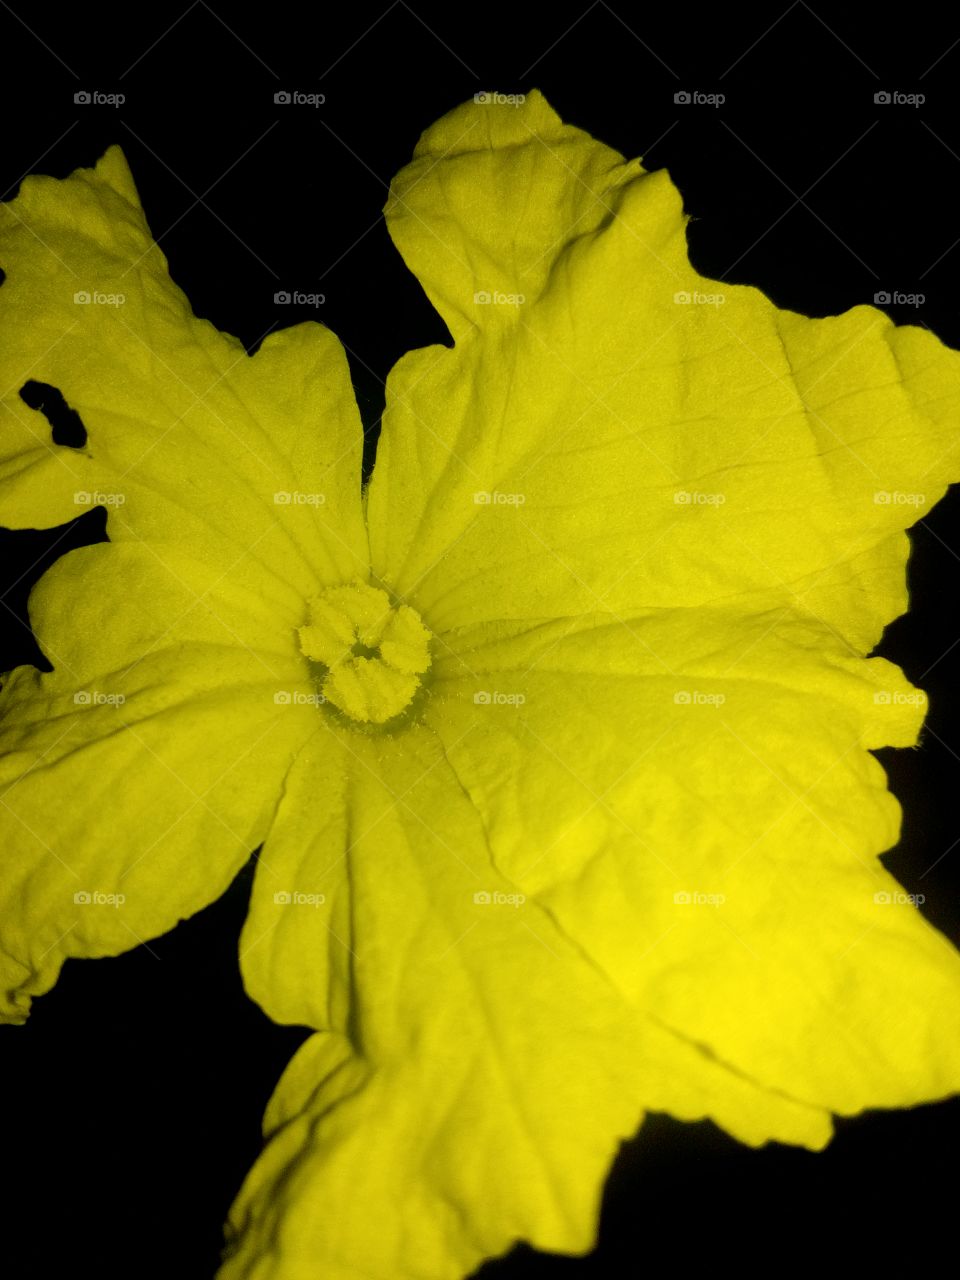 yellow flower on dark background